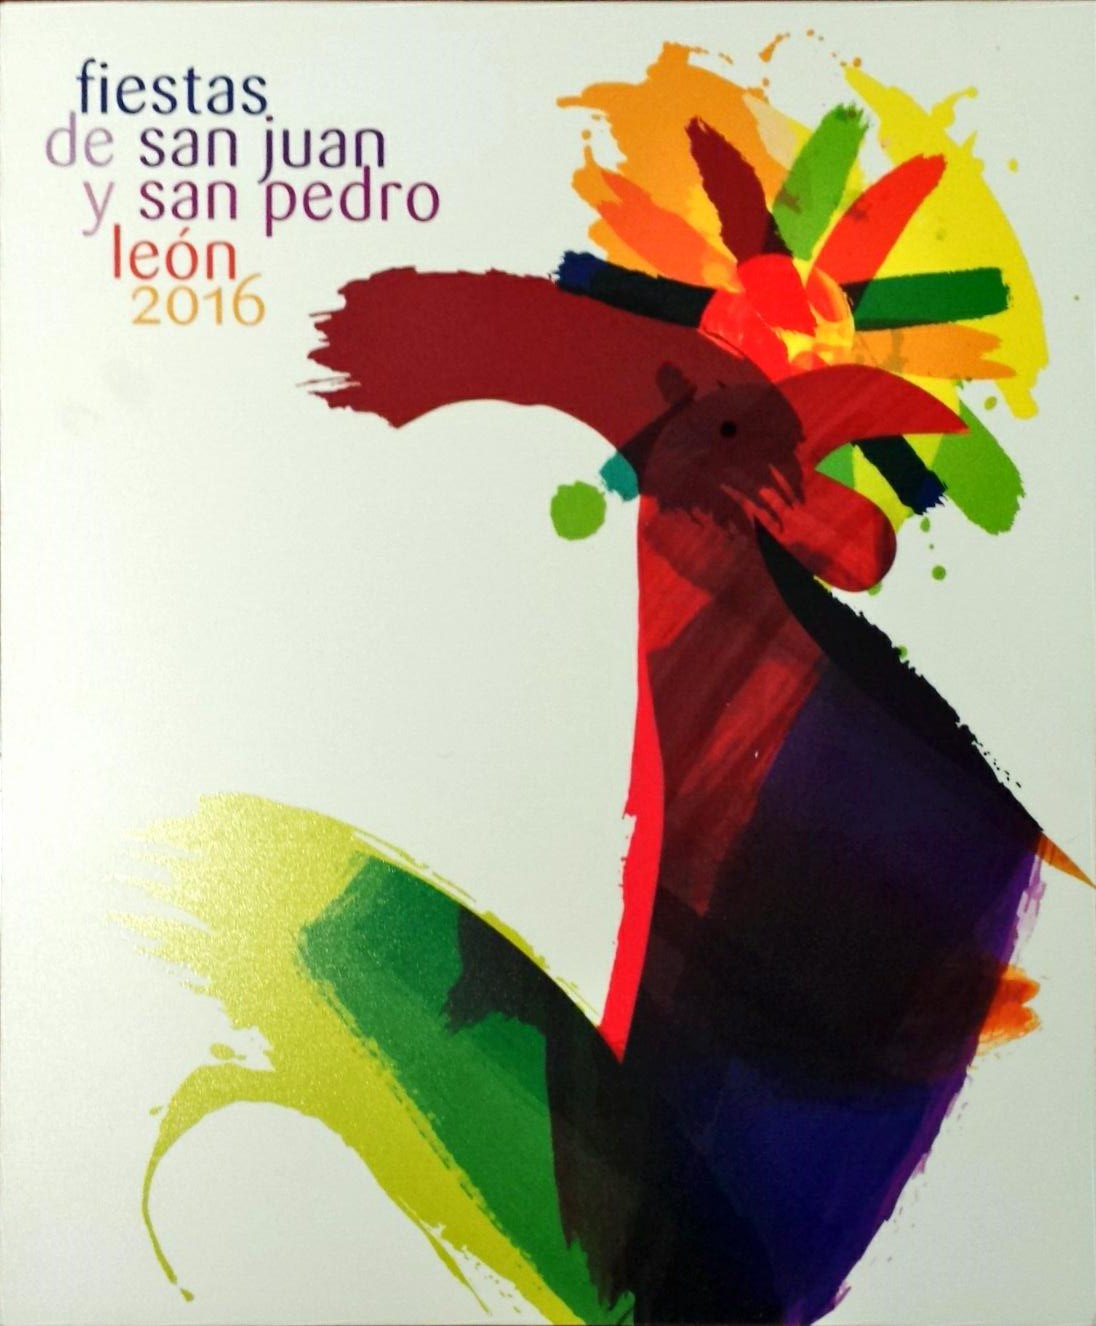 Fiestas de San Juan y San Pedro 2016 en León. Programa Oficial 5